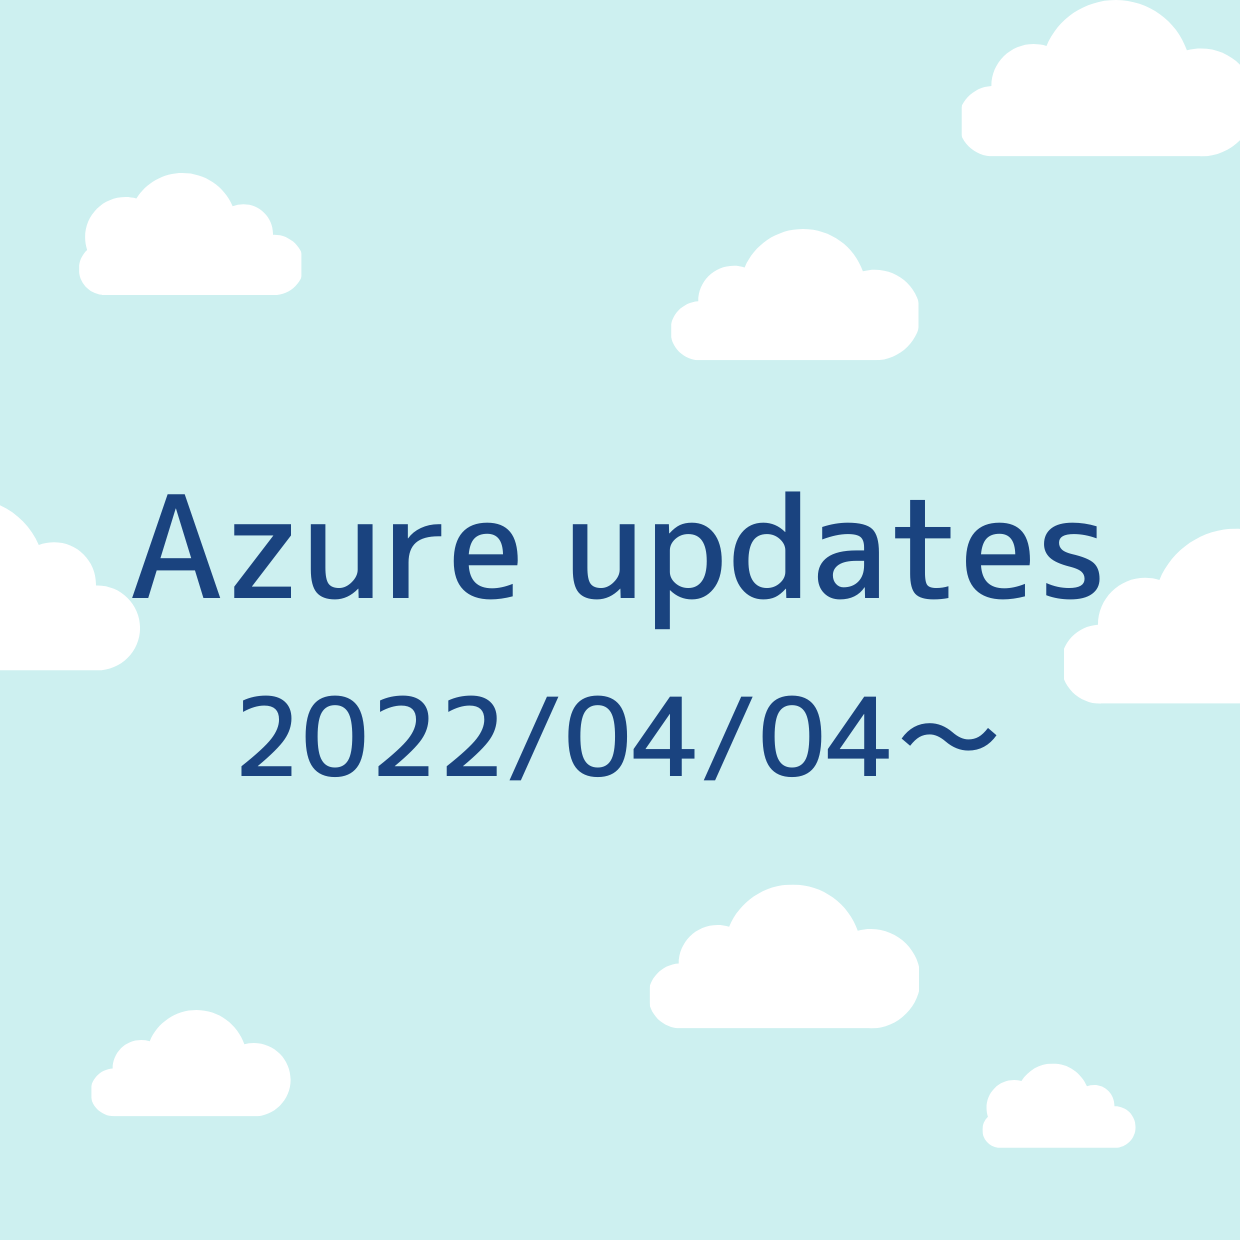 2022/04/04 週の Azure updates 日本語速報